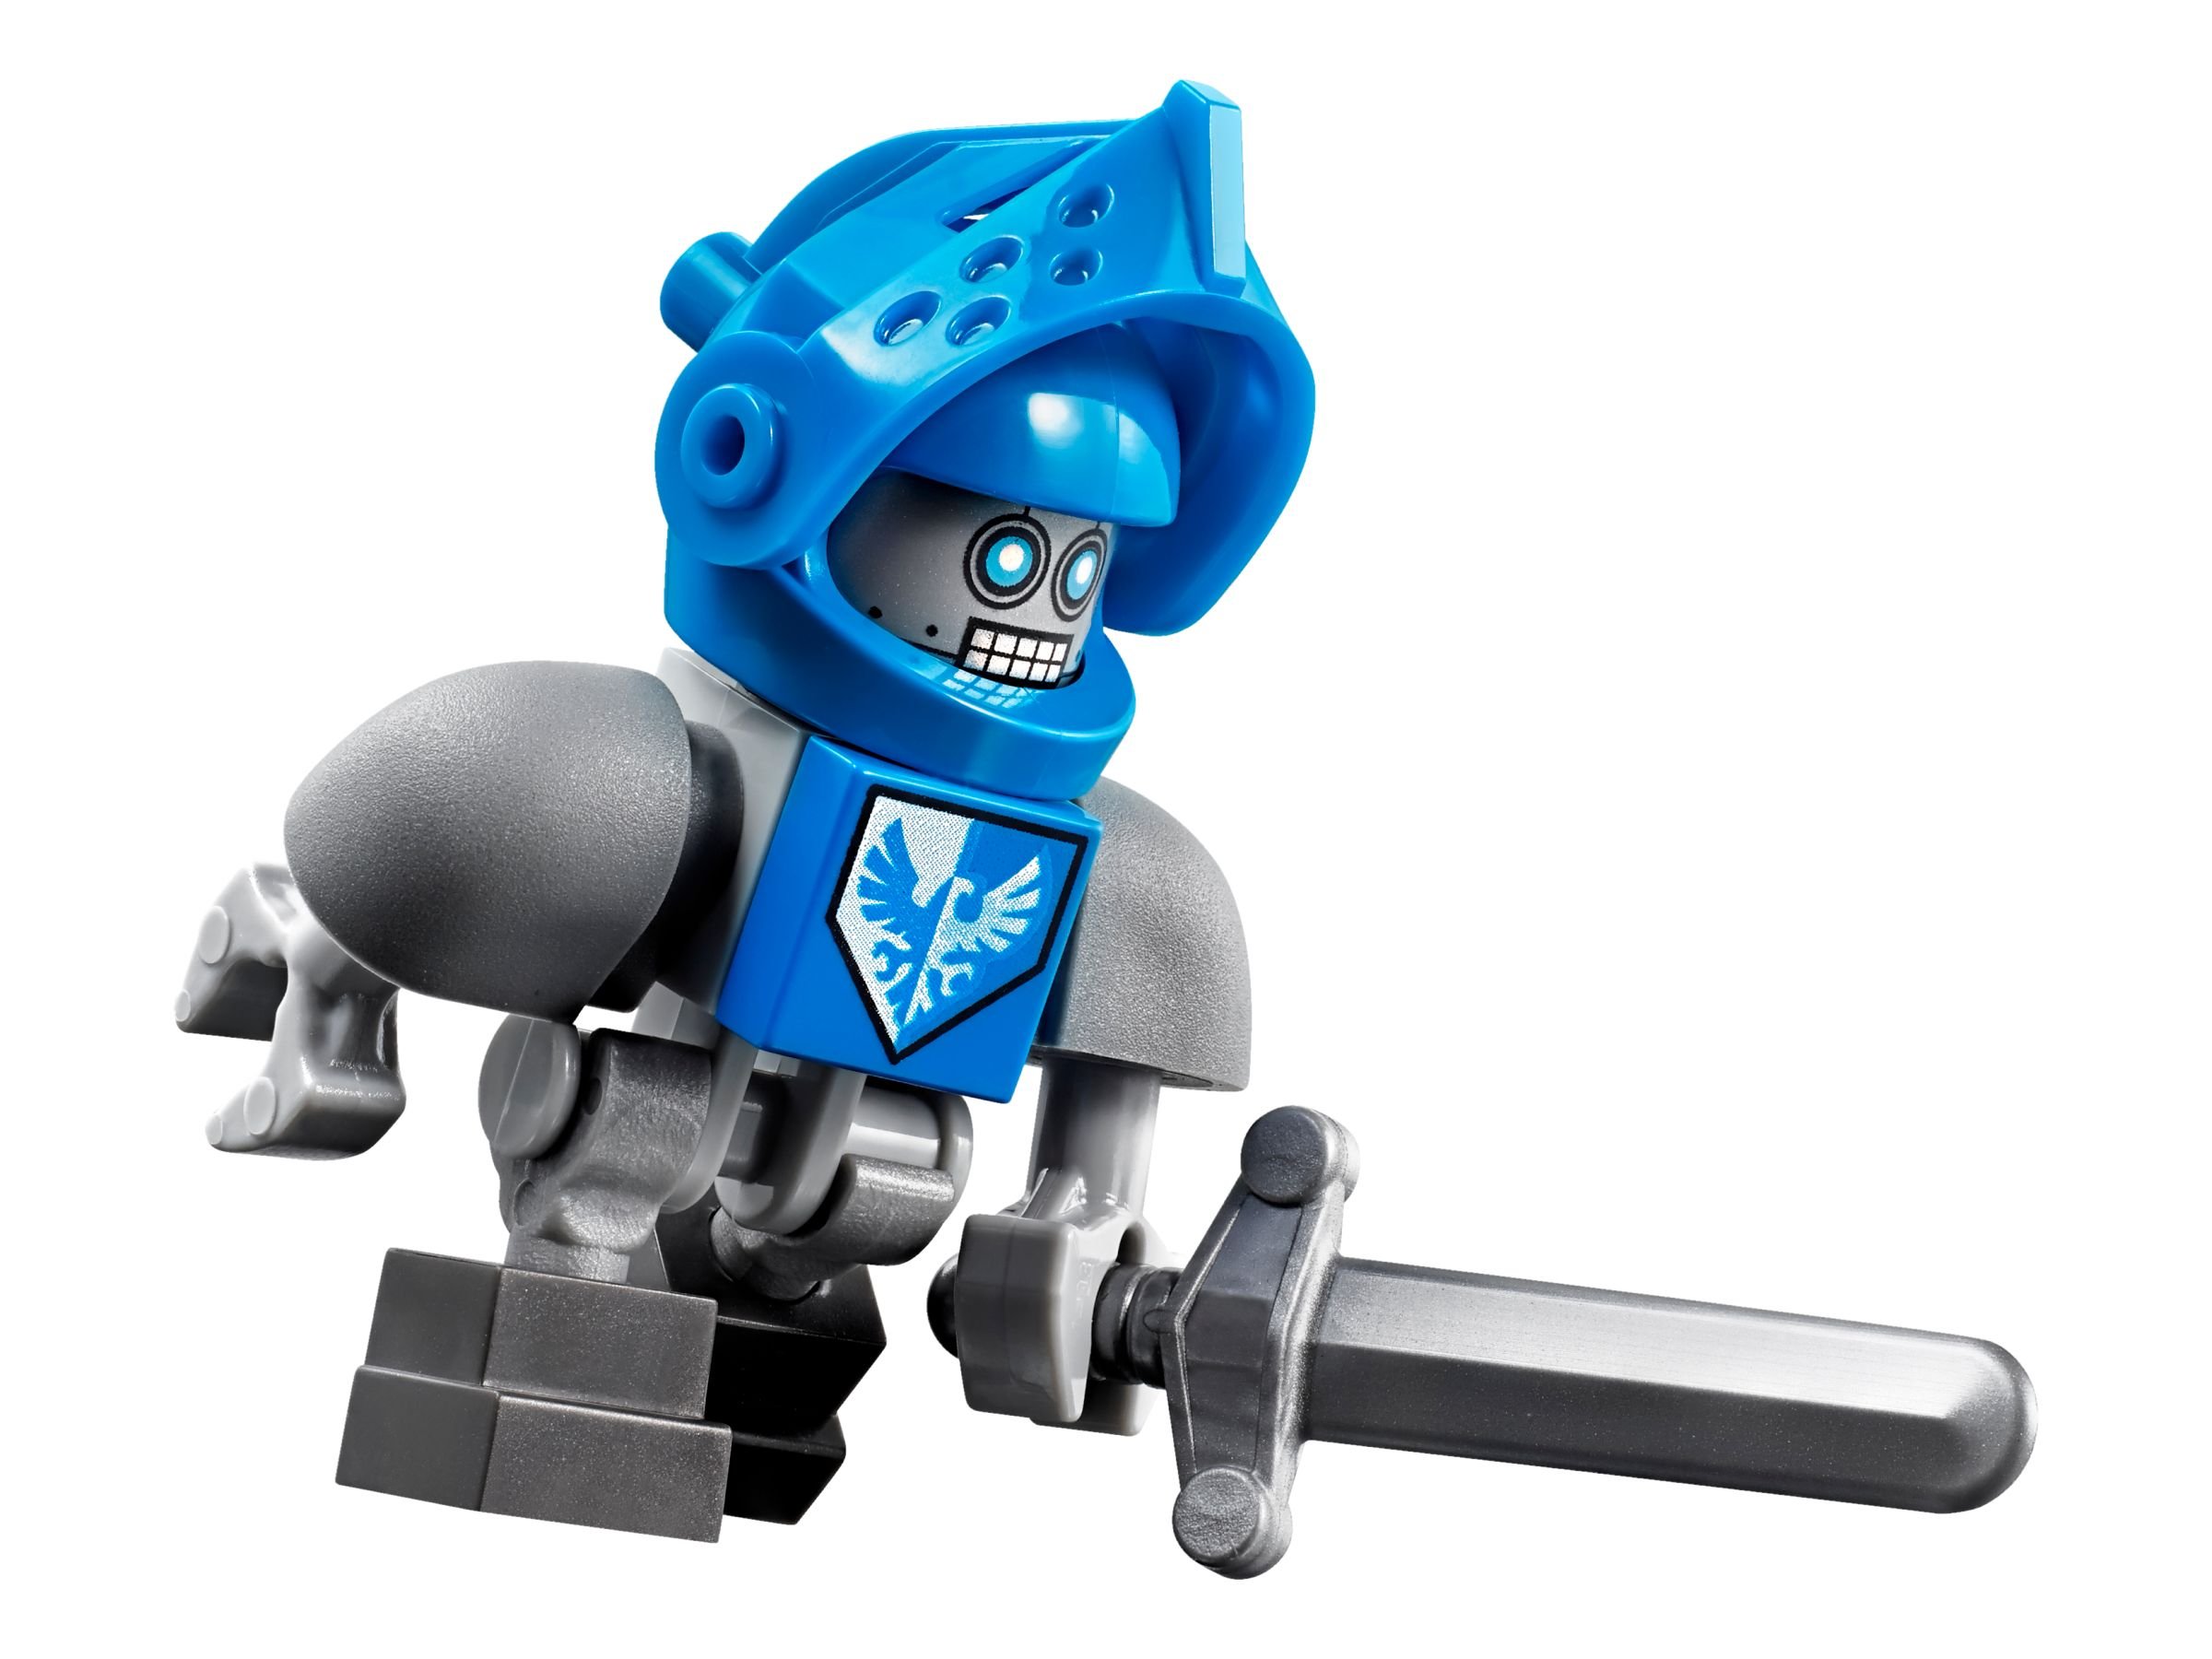 LEGO Nexo Knights 70351 Clays Blaster-Falke LEGO_70351_alt8.jpg